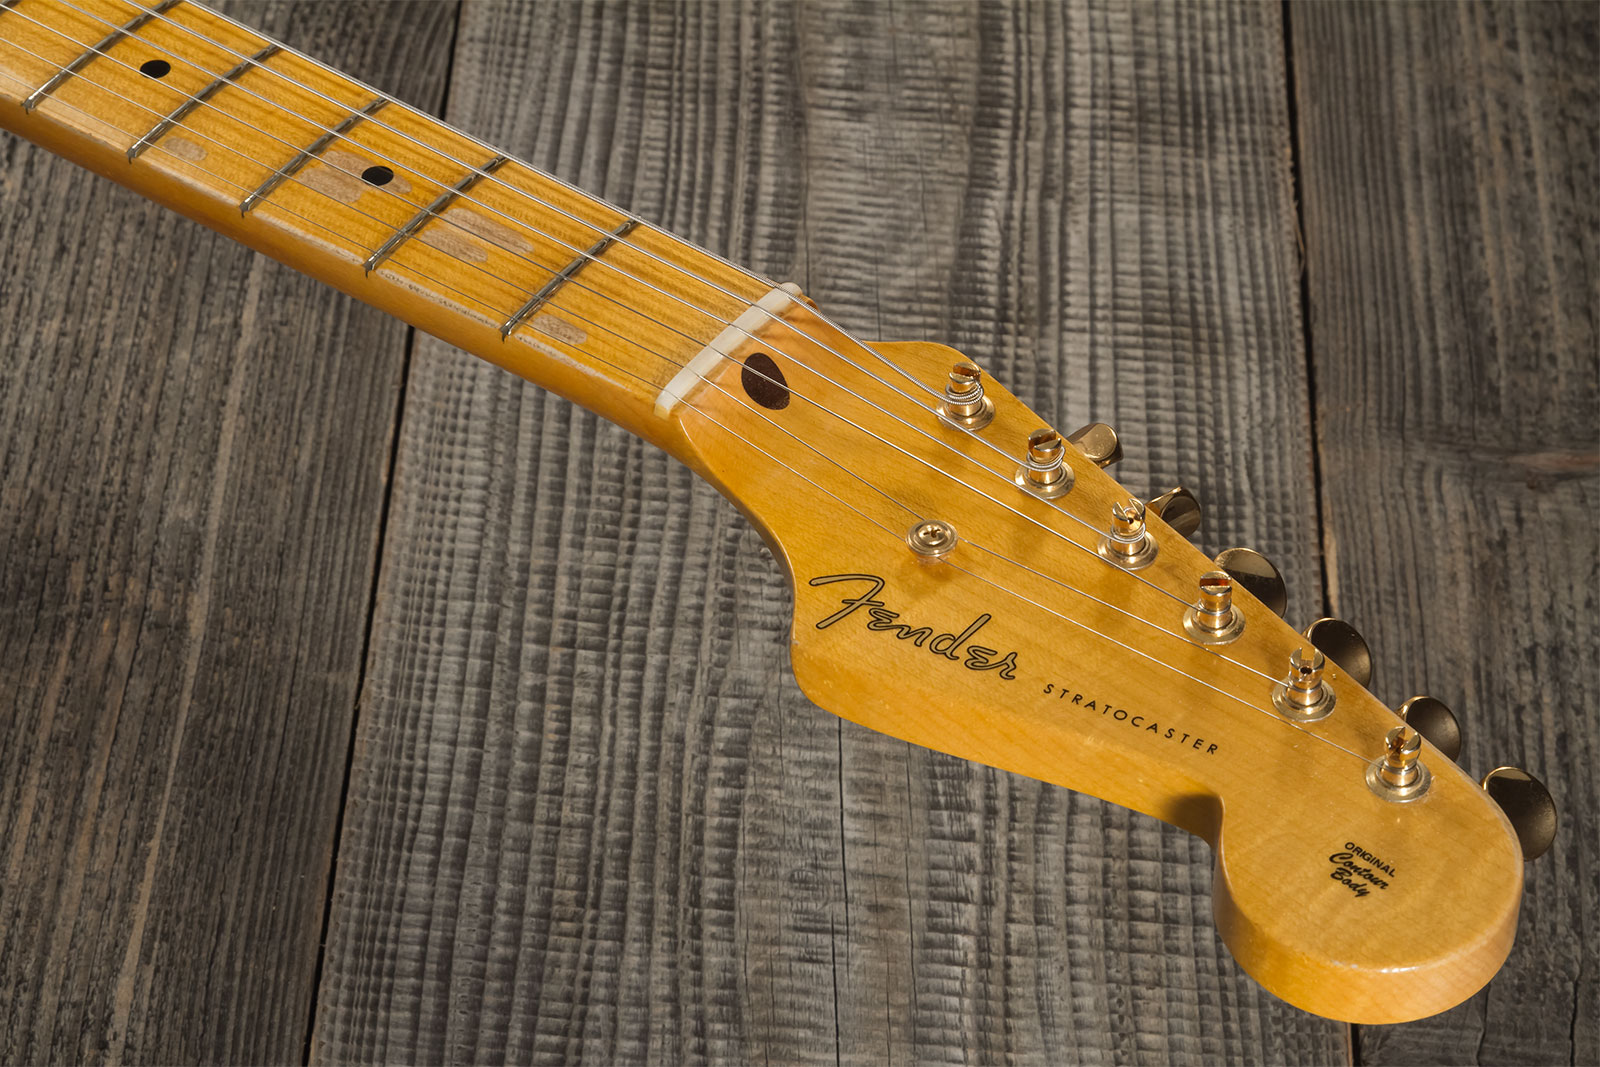 Fender Custom Shop Strat 1955 Hardtail Gold Hardware 3s Trem Mn #cz568215 - Journeyman Relic Natural Blonde - E-Gitarre in Str-Form - Variation 6